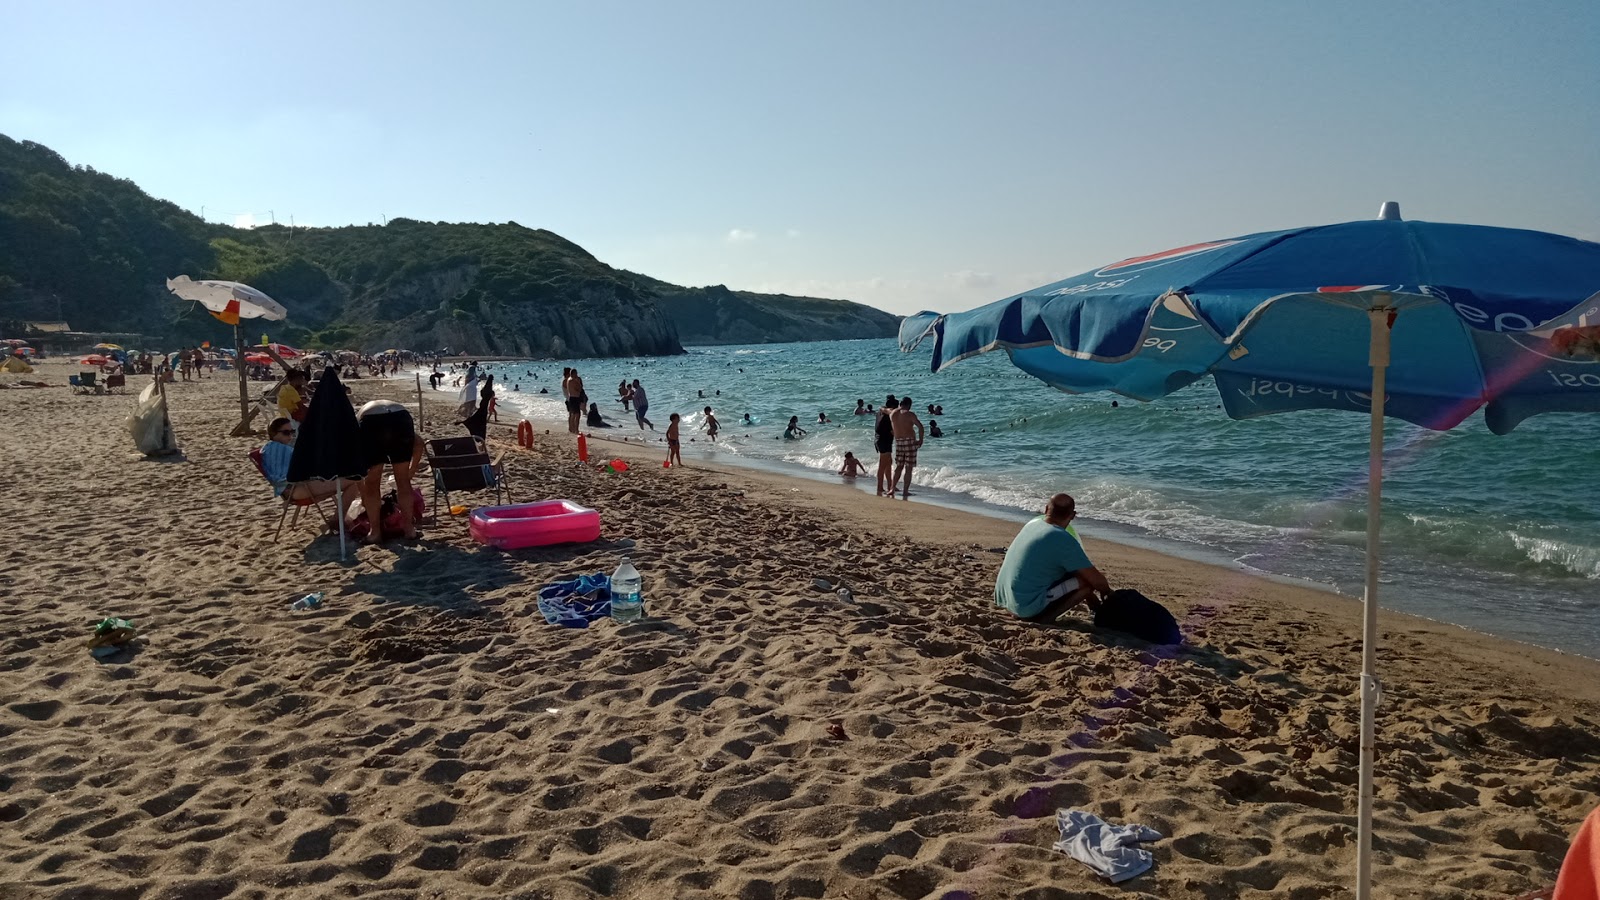 Kabakoz Village Plajı'in fotoğrafı parlak kum yüzey ile